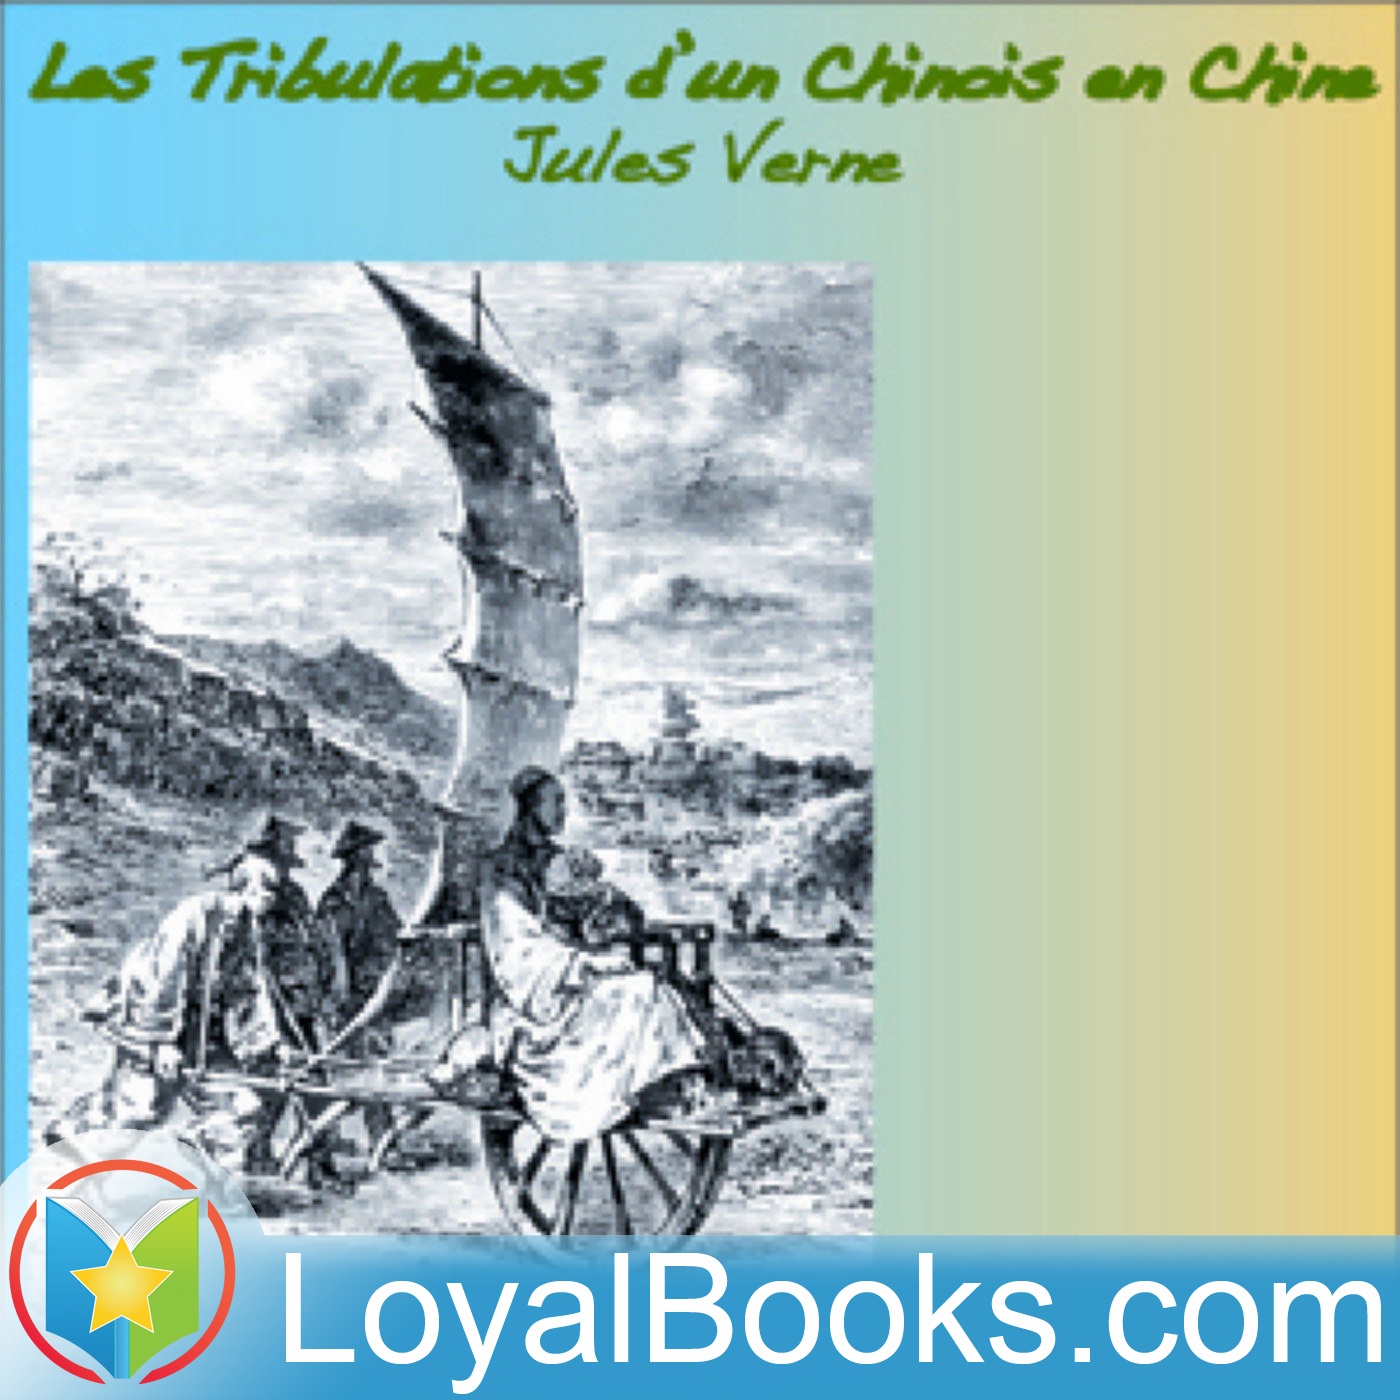 Les Tribulations d'un chinois en Chine by Jules Verne